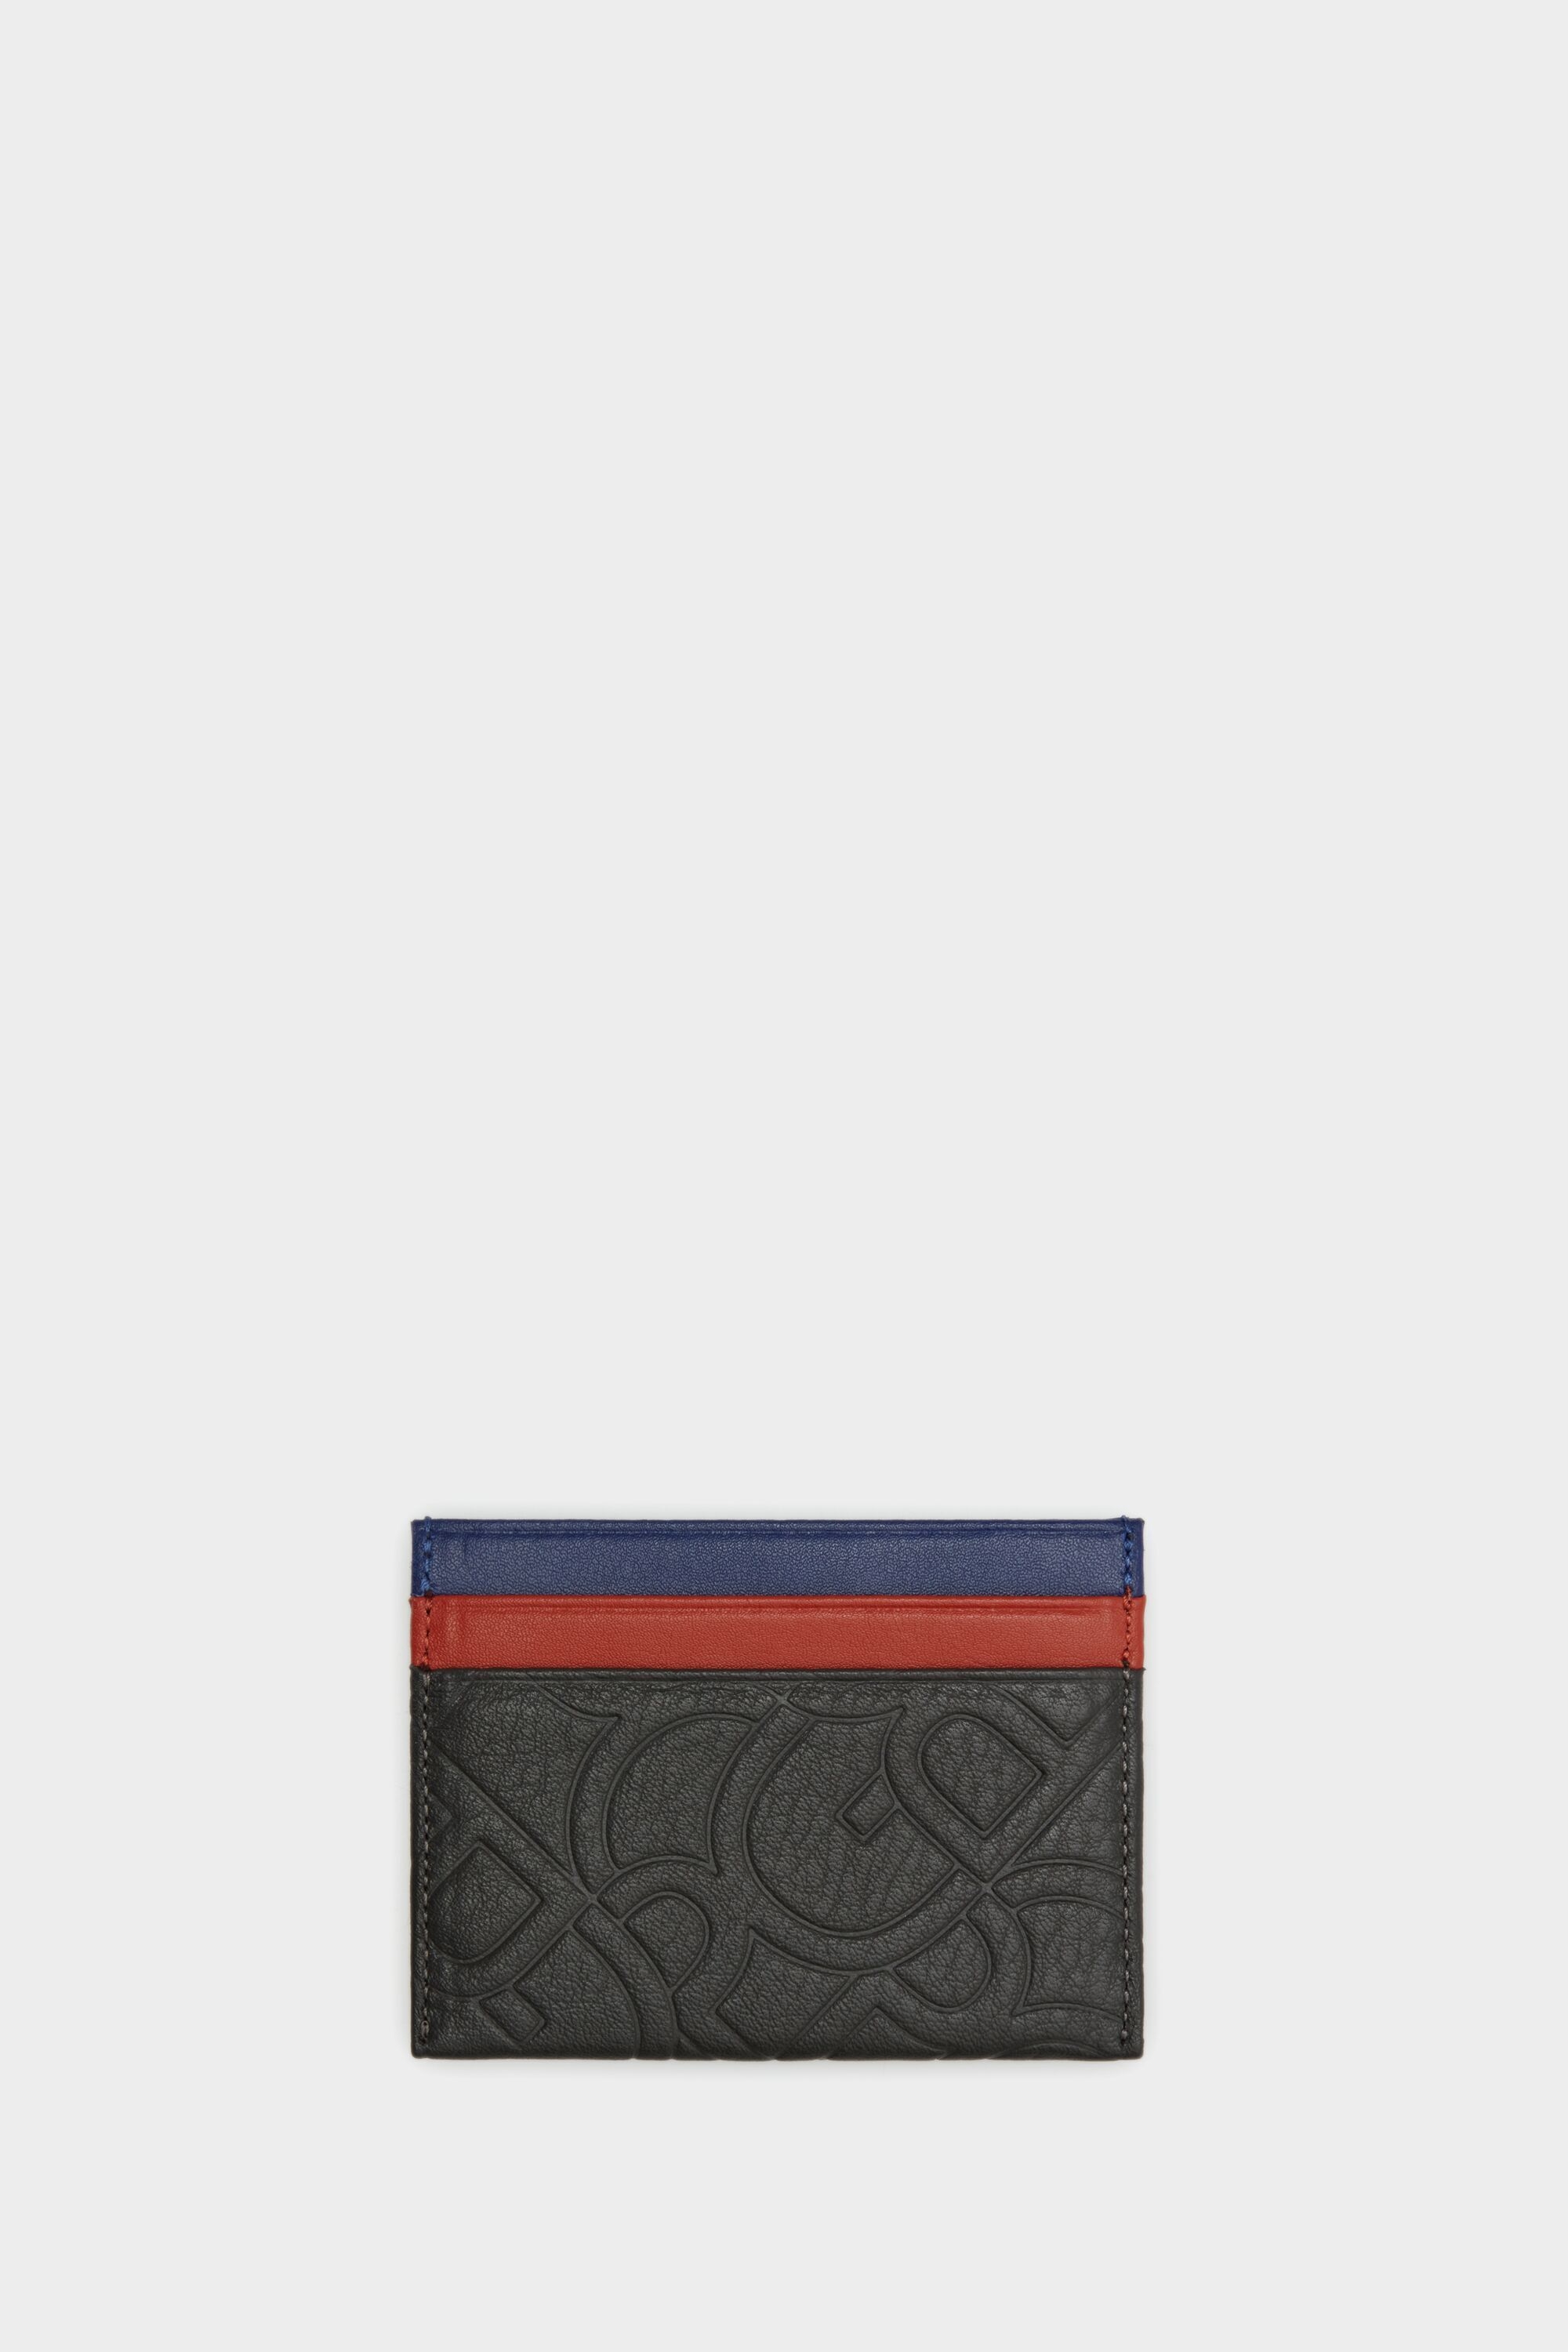 Tándem leather card holder